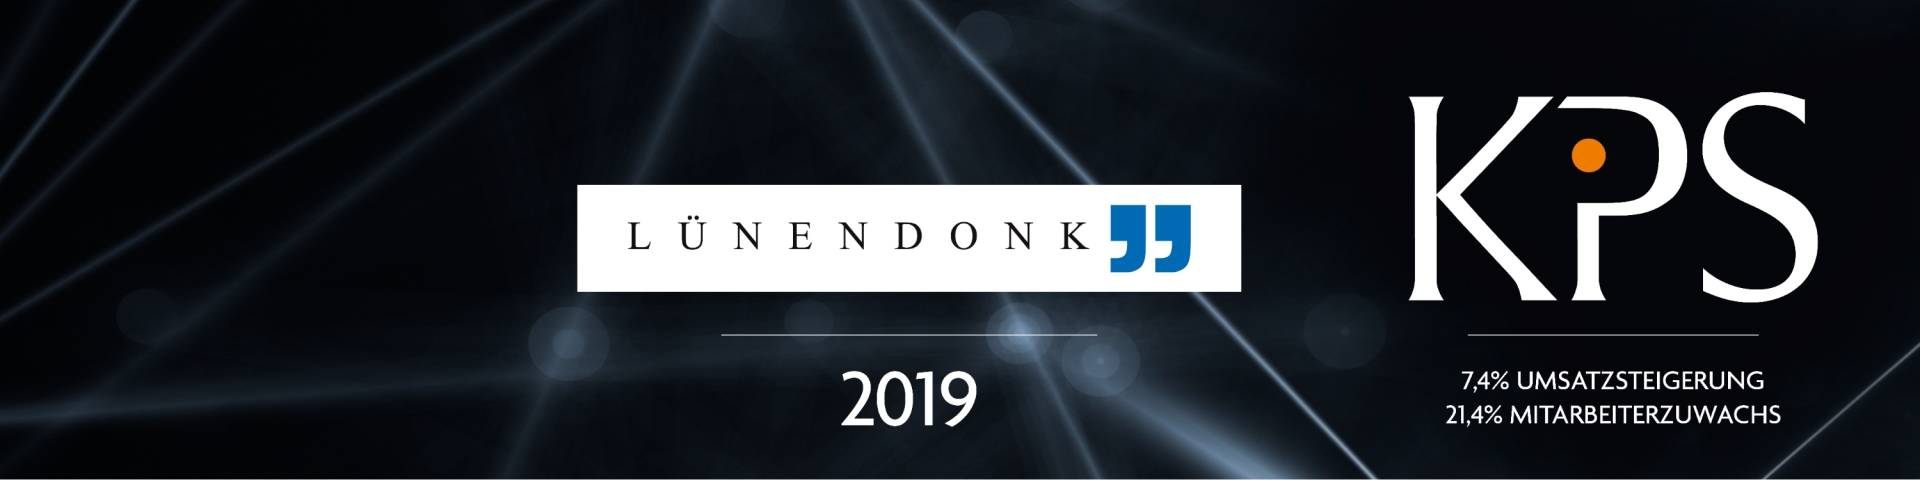 Lünendonk-List 2019